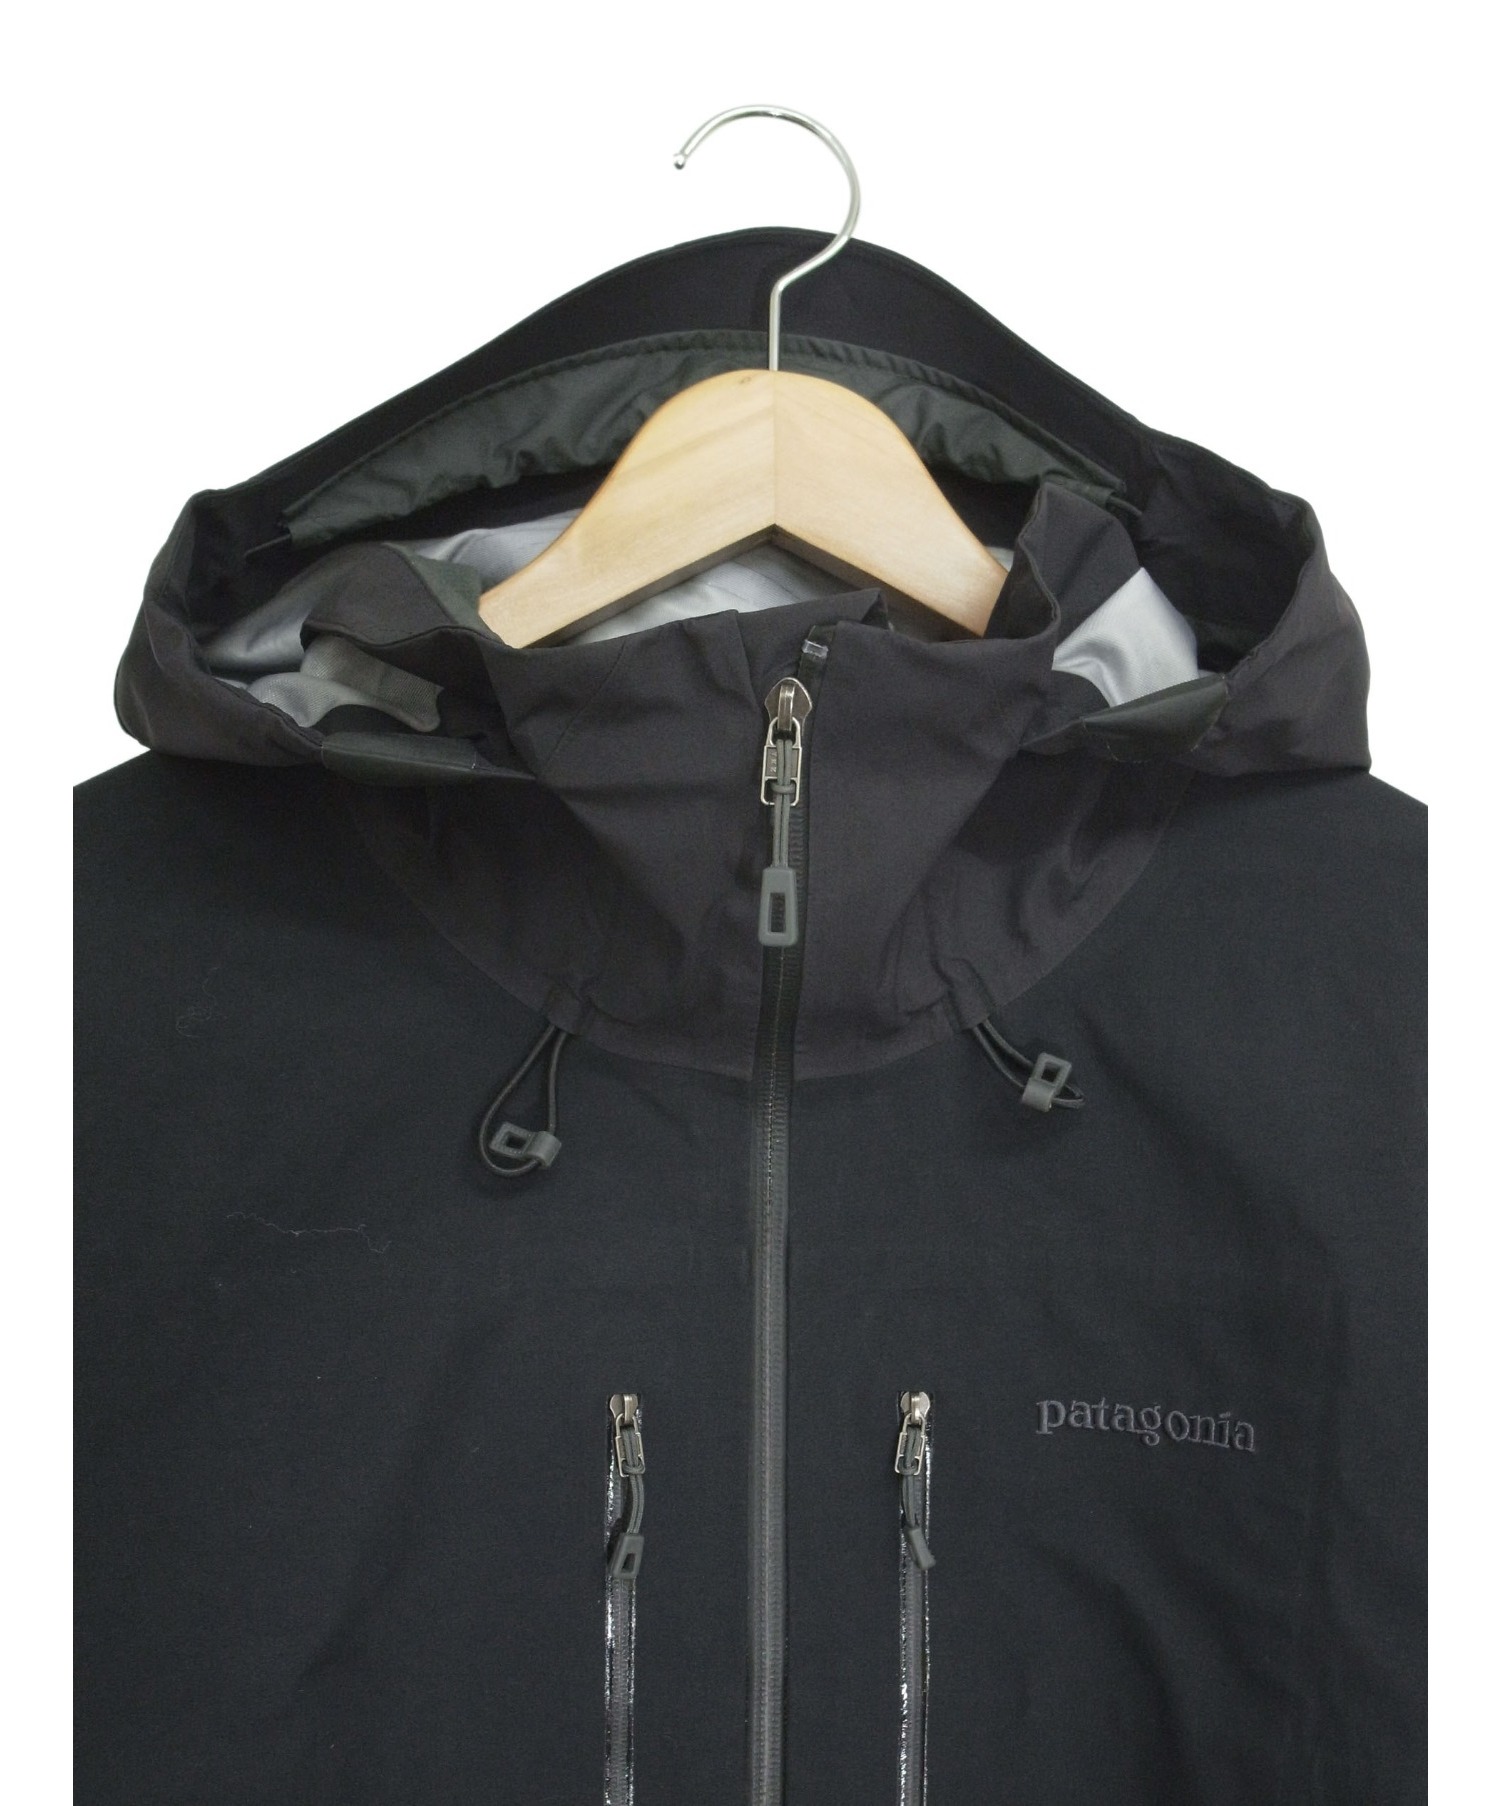 Patagonia (パタゴニア) トリオレットジャケット ブラック サイズ:L 83400 GORE-TEX